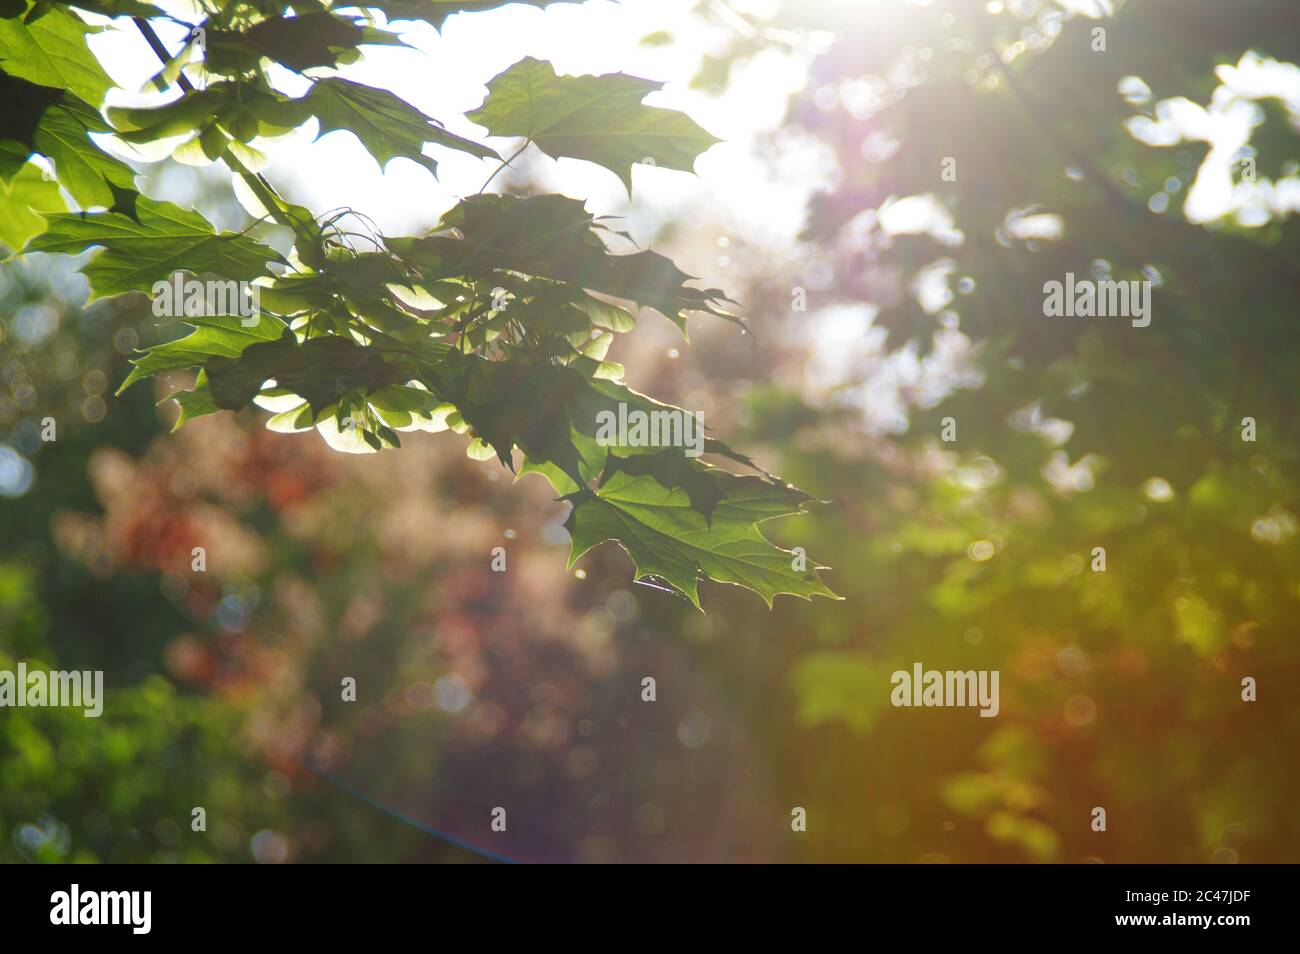 Concept de tranquillité. Scène calme en forêt avec soleil en arrière-plan. Des rayons de soleil entre les feuilles. Banque D'Images